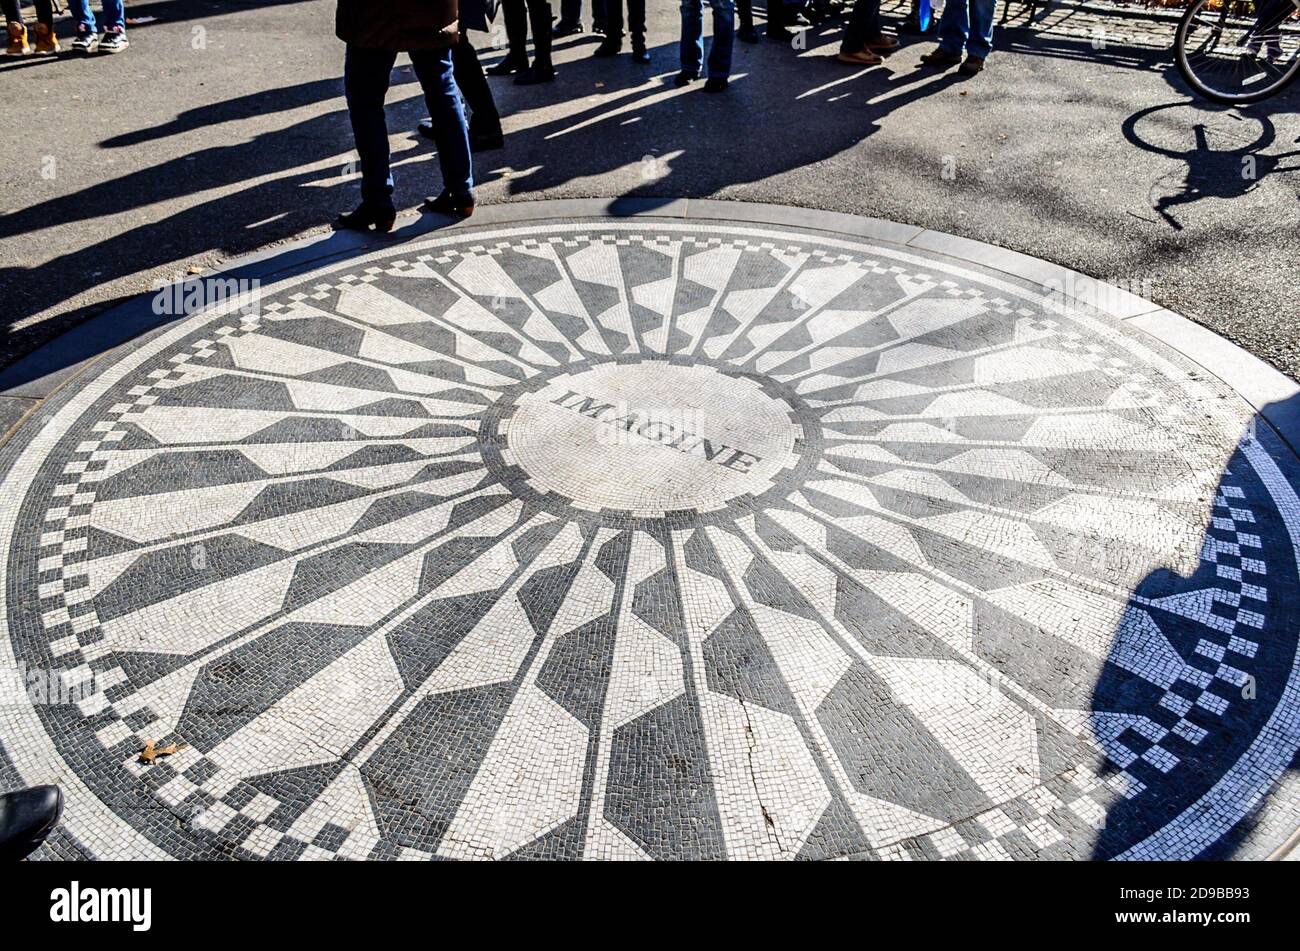 Stellen Sie sich das Tribute-Zeichen auf dem Foor im Central Park vor. Strawberry Fields John Lennon Memorial. Manhattan, New York City, USA Stockfoto